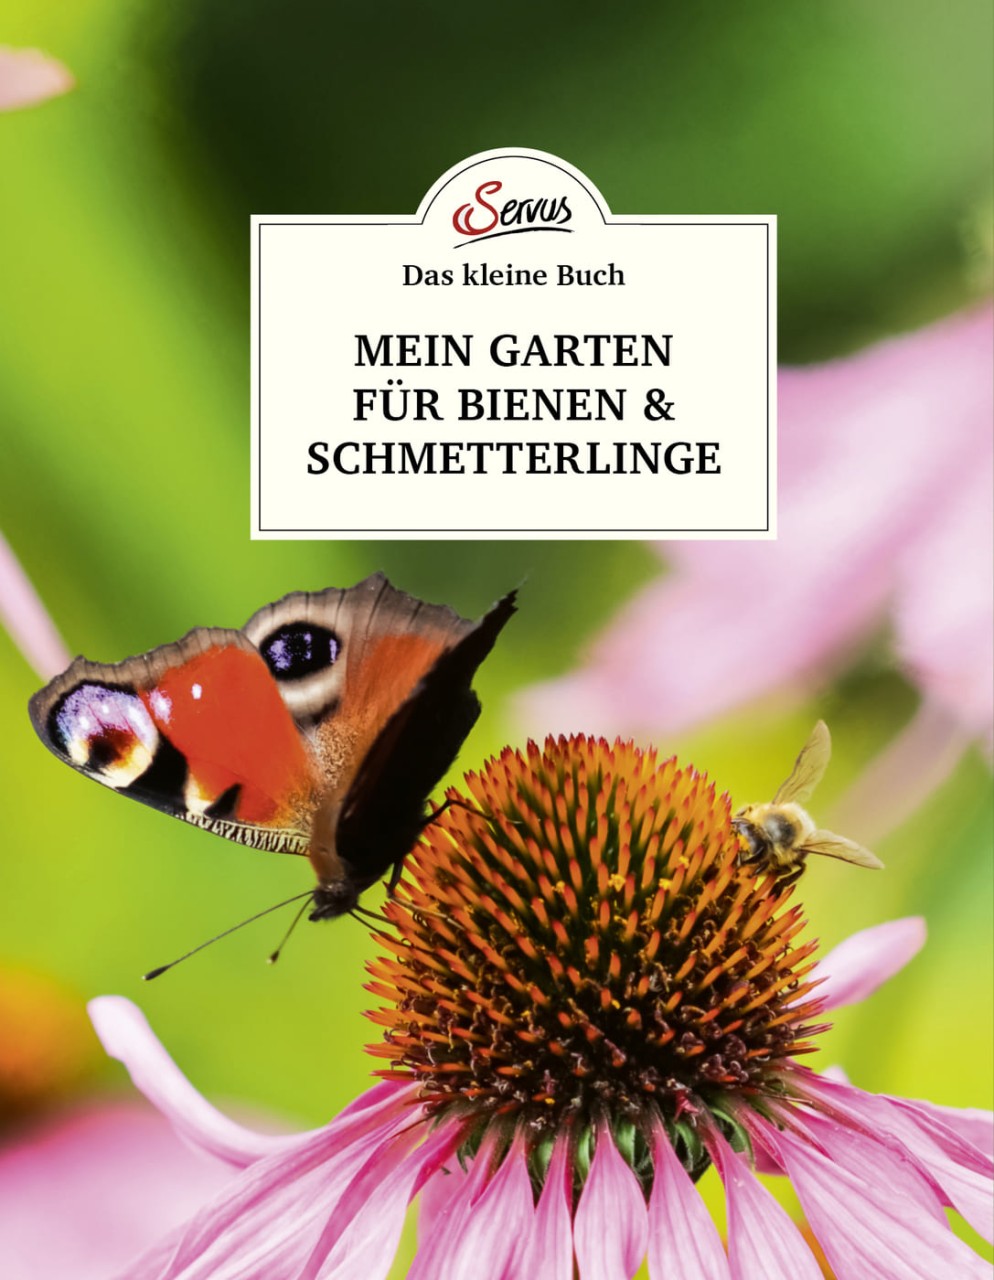 Das kleine Buch: Mein Garten fu?r Bienen & Schmetterlinge von Servus Verlag